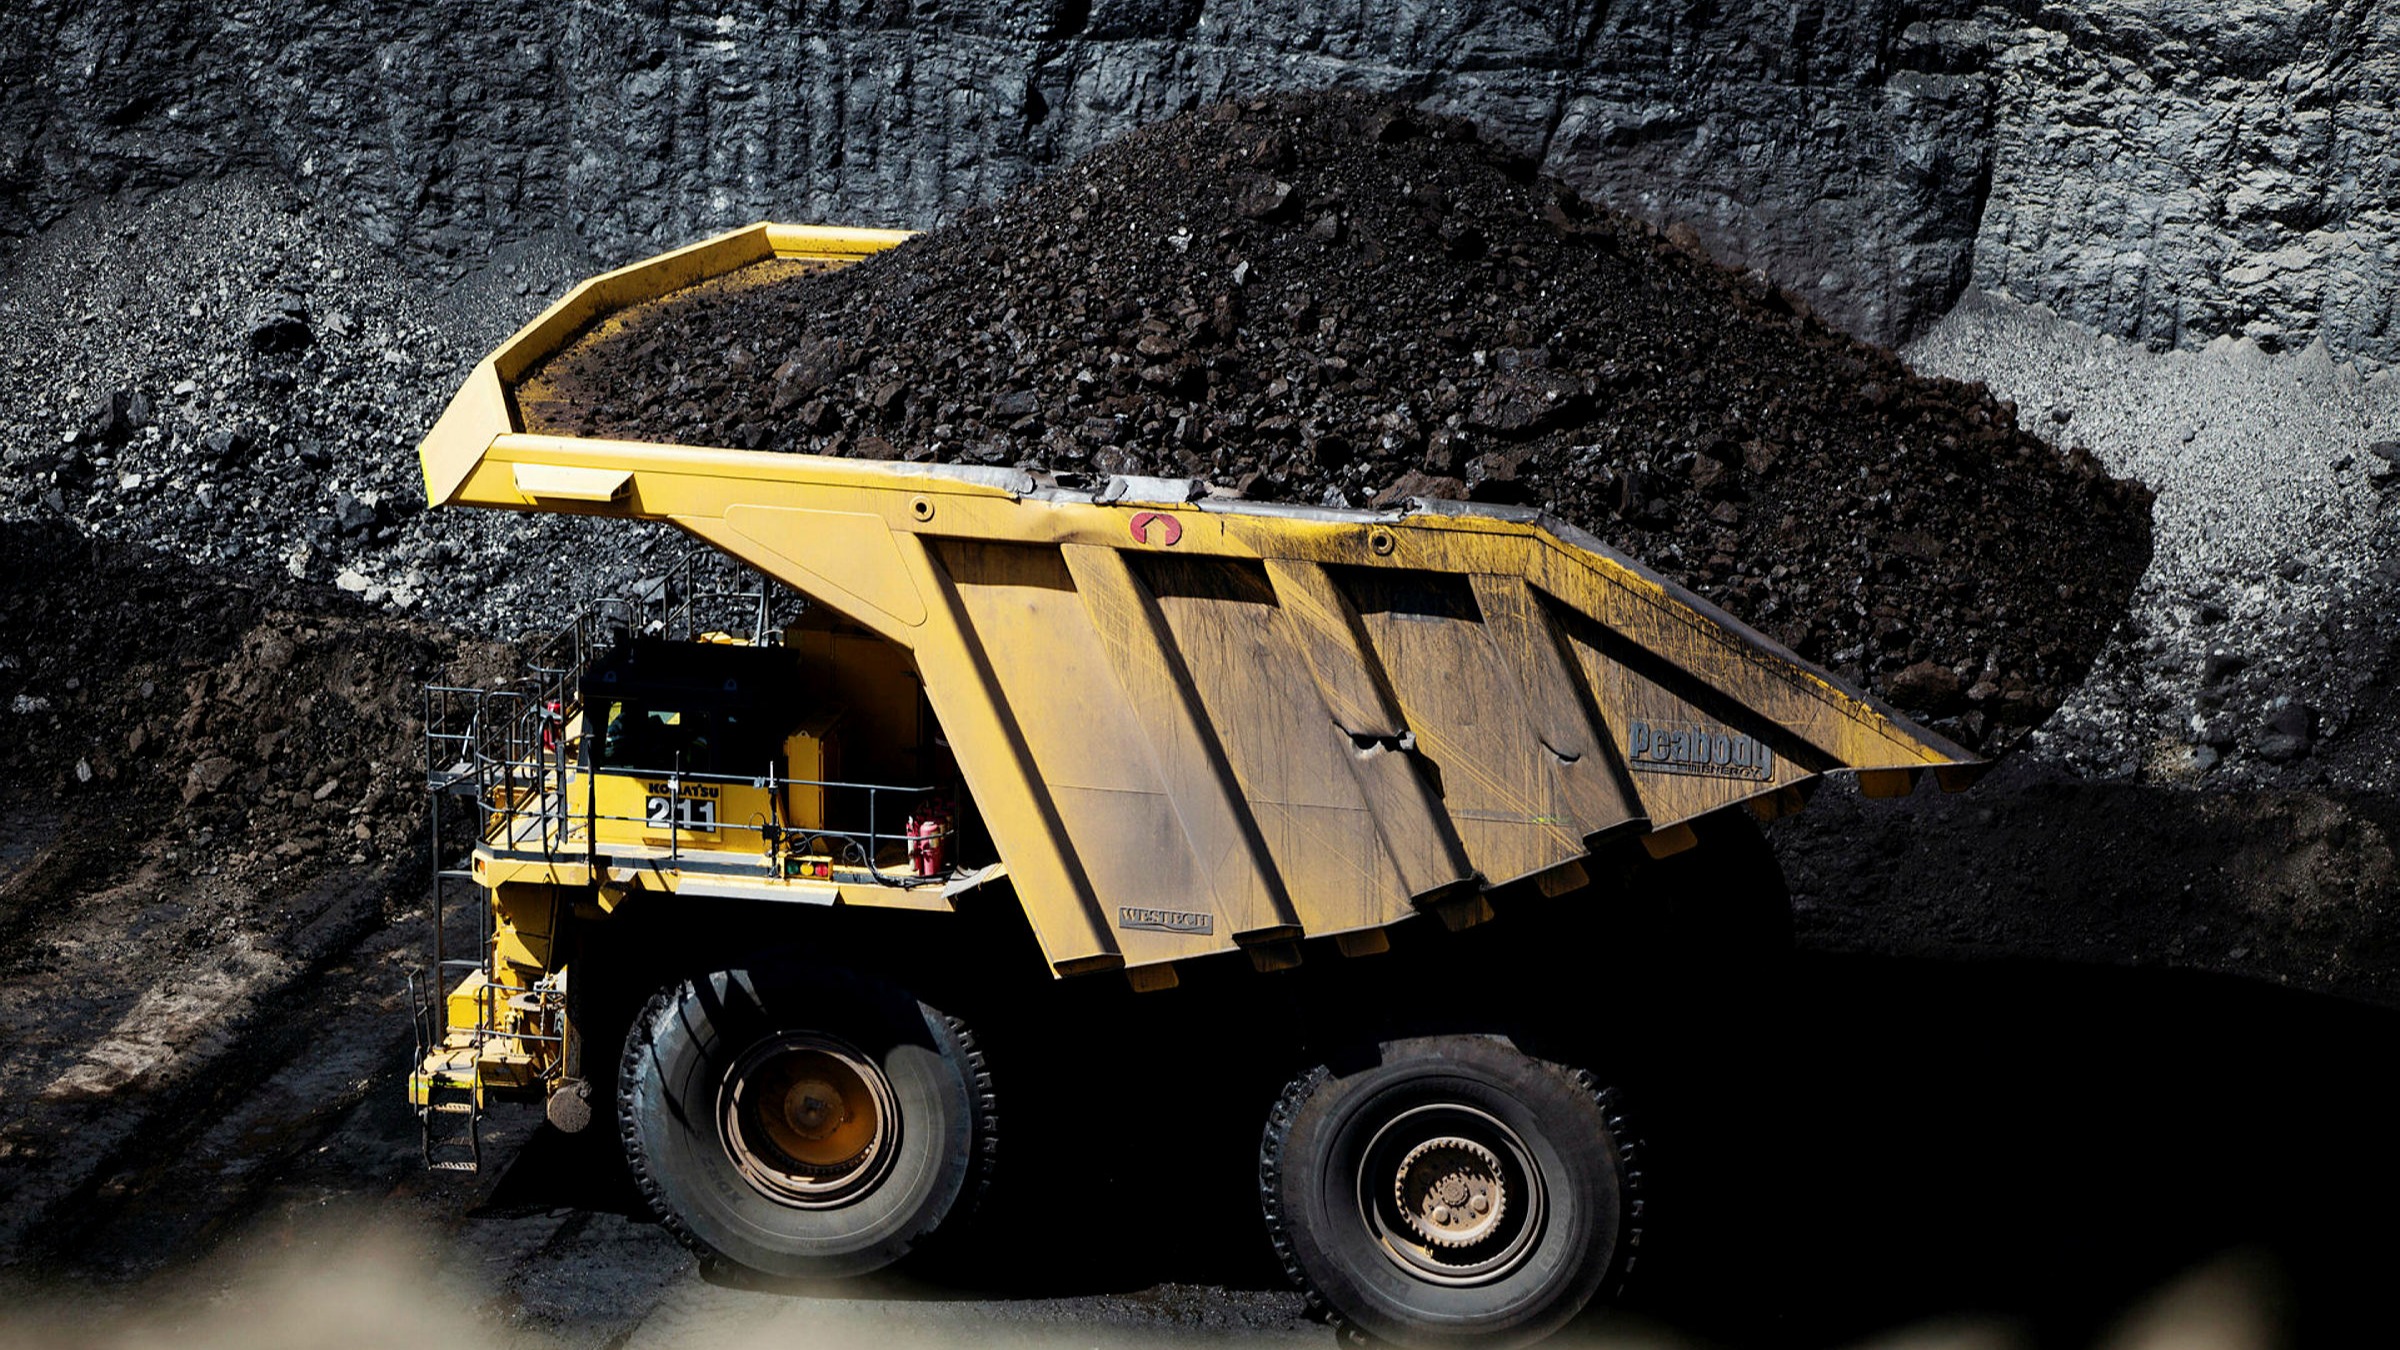 ارزش بزرگترین معدن زغال سنگ جهان 1.4 میلیارد دلار کاهش یافت |  فایننشال تایمز